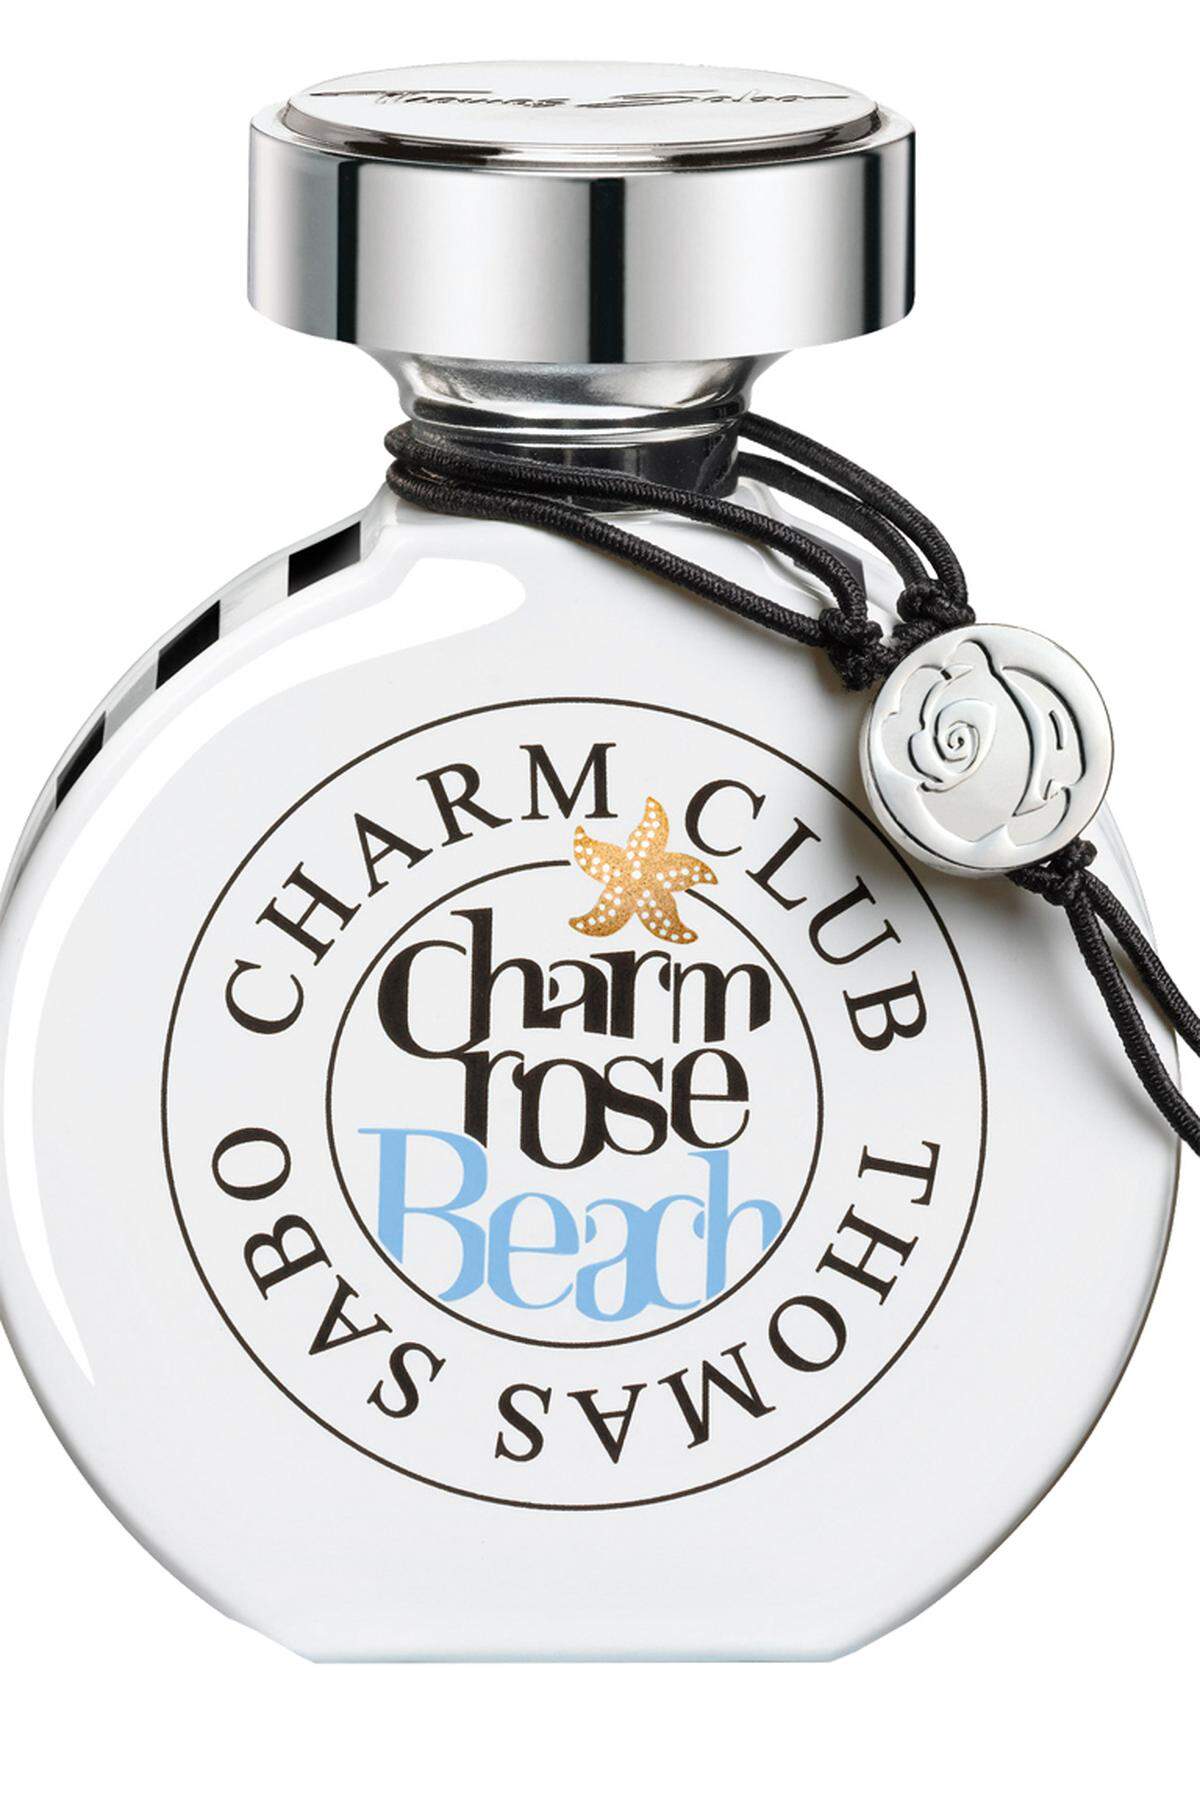 „Charm Rose Beach“ von Thomas Sabo, 45 Euro, im Fachhandel erhältlich